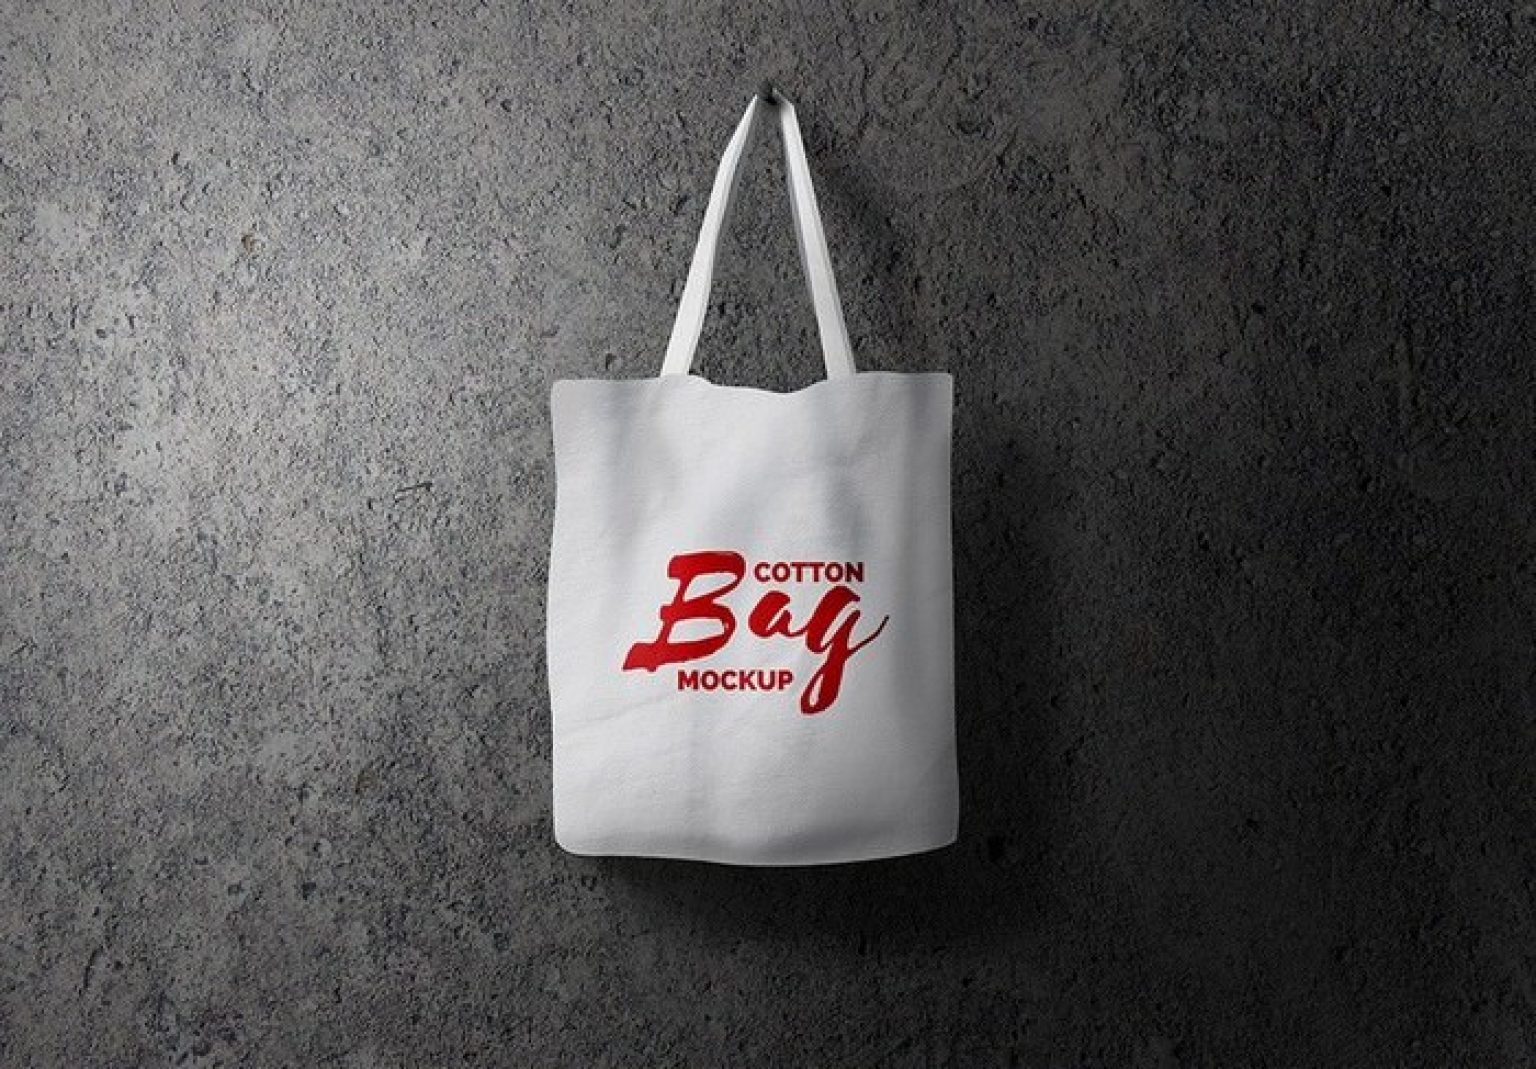 Download 31+ Best Bag Mockup Templates For Branding 2020 - Templatefor